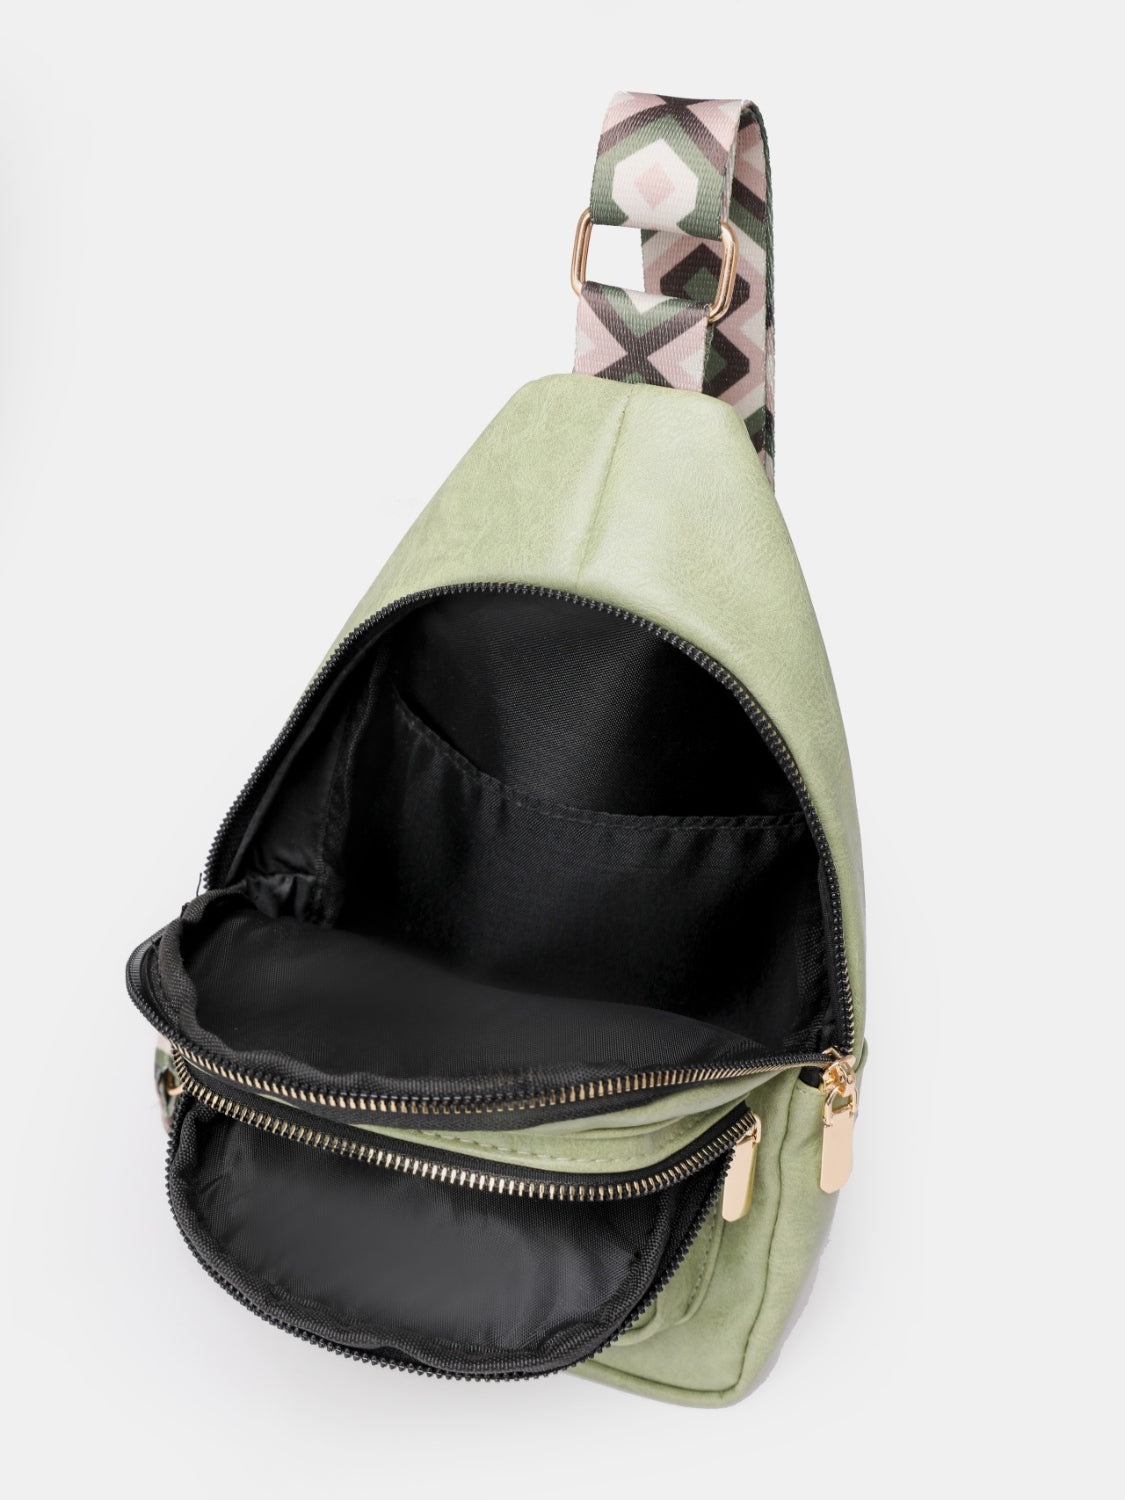 PREORDER - Strive for greatness Adjustable Strap Sling Bag